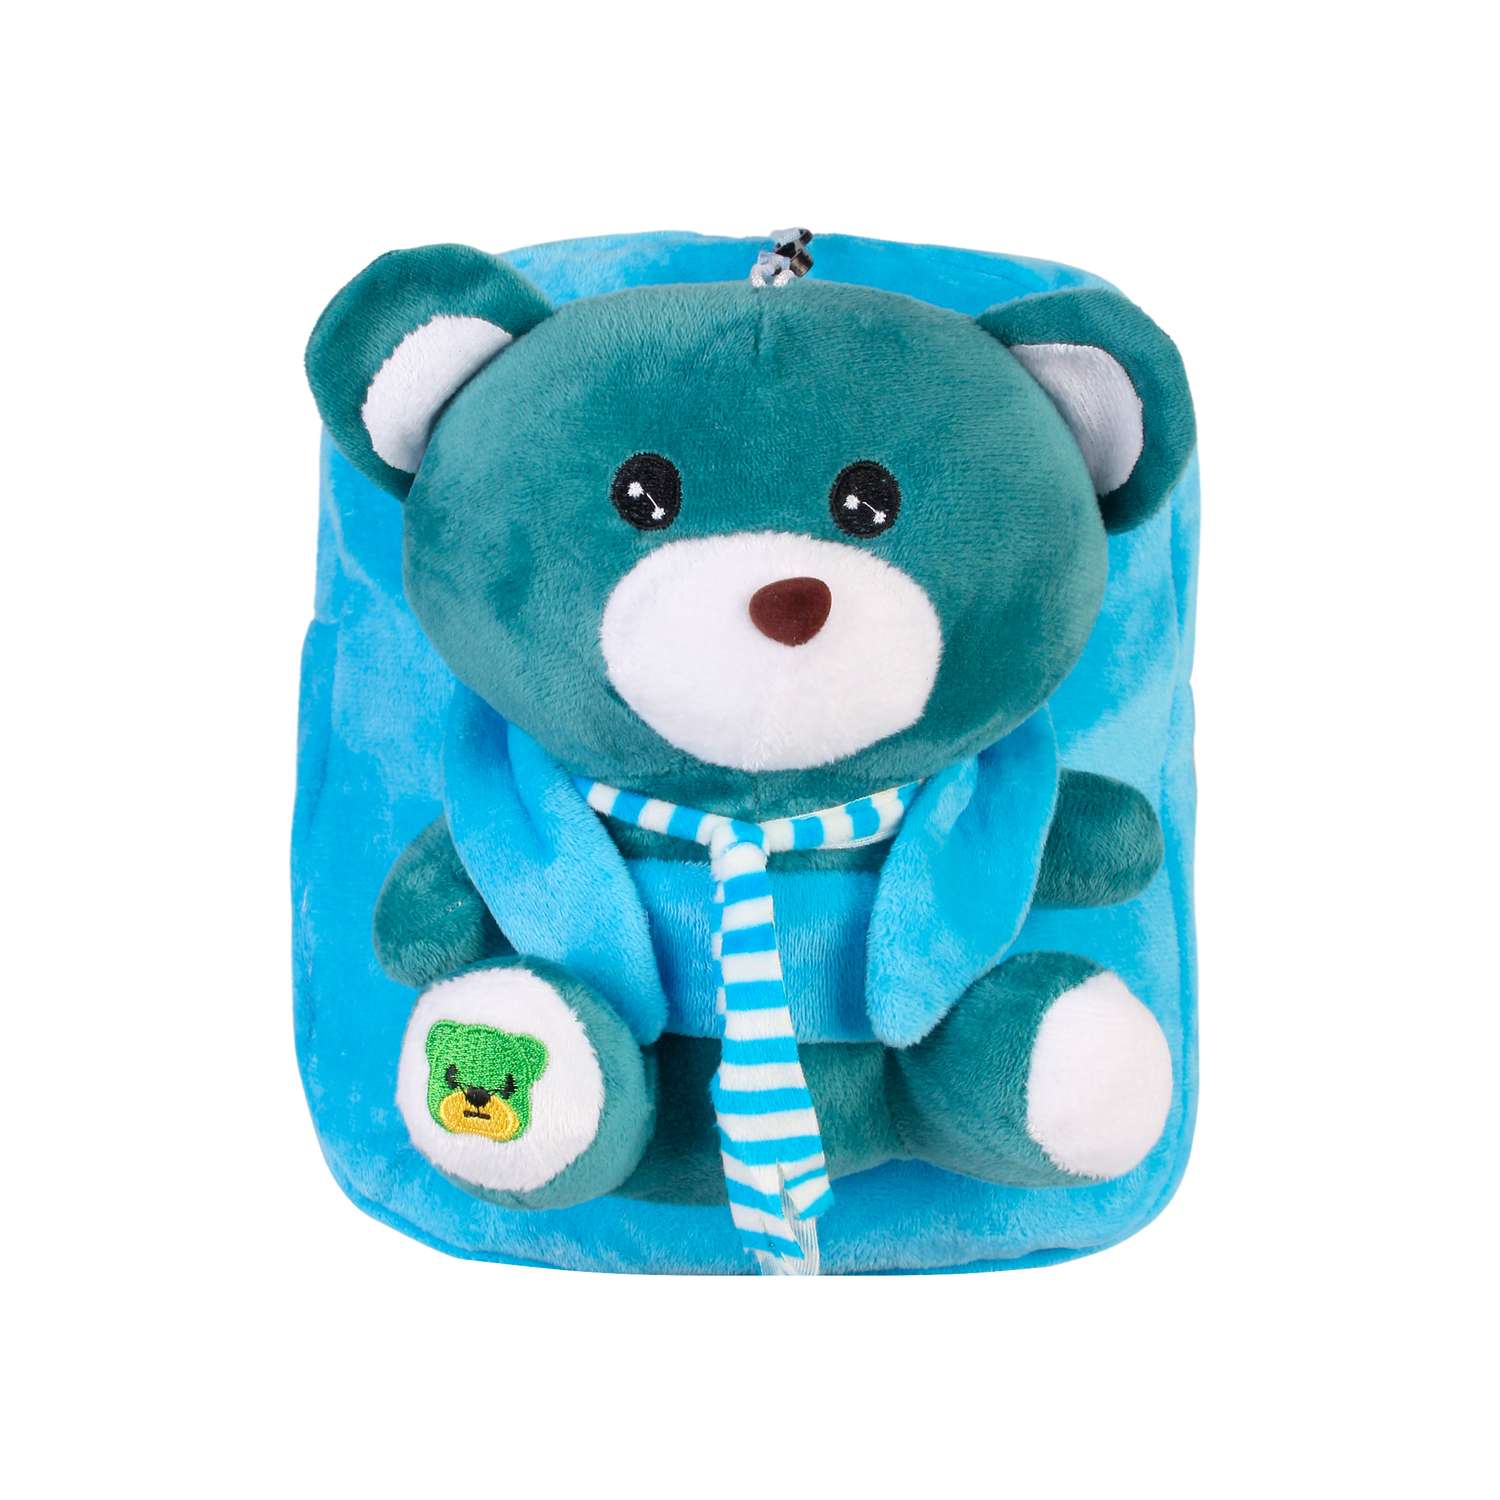 Рюкзак с игрушкой Little Mania голубой Мишка изумрудно-зелёный - фото 1